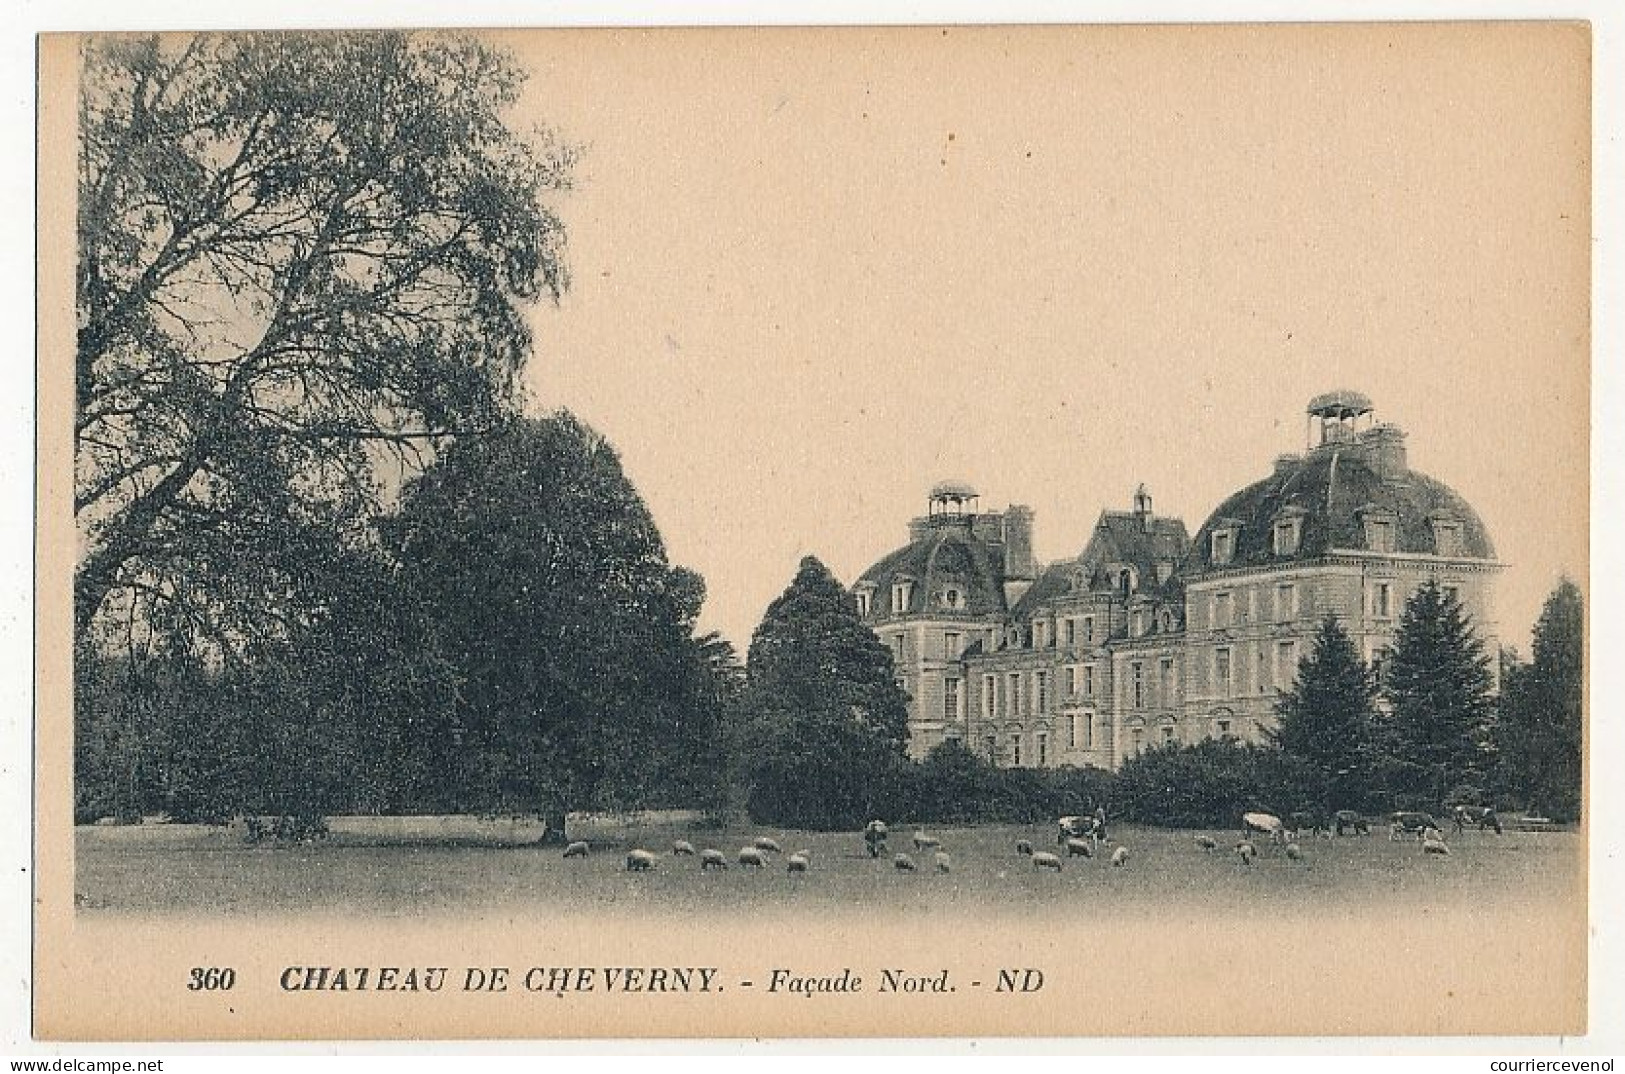 6 CPA - CHEVERNY (Loir et Cher) - Le Château - Facade, Facade Nord, Dépendances, dont Avis de Passage Chic Parisien